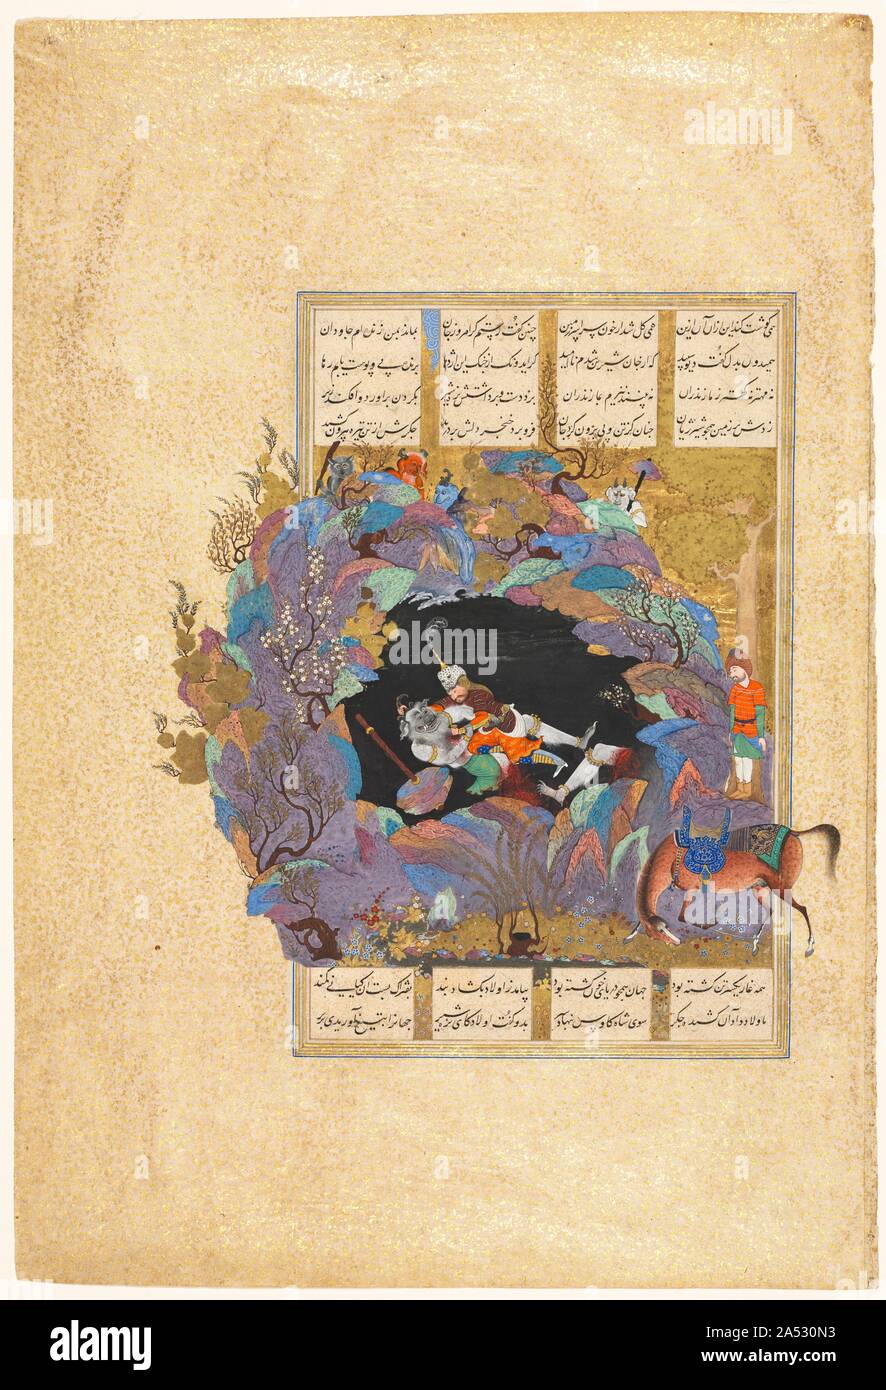 Rustam il settimo corso: egli uccide il White Div, folio 124 da un Shah-nama (Libro dei Re) di Firdausi (Persiano, circa 934-1020), 1522-1537. In questo magnifico e raffinato lavoro di un pittore di corte di Safavid in Iran, l'eroe guerriero Rustam completa il suo ultimo di sette fatiche ciclopico che ha stabilito la sua maestria come un eroe incomparabile. Egli si impegna in una lotta feroce con il capo dei demoni, il White Div, al fine di raccogliere il sangue molto potente dal suo fegato che è in grado di ripristinare la vista per il re persiano&#x2019;s accecato gli occhi. La loro battaglia che avviene all'interno di una grotta, è testimoniata da un gr Foto Stock